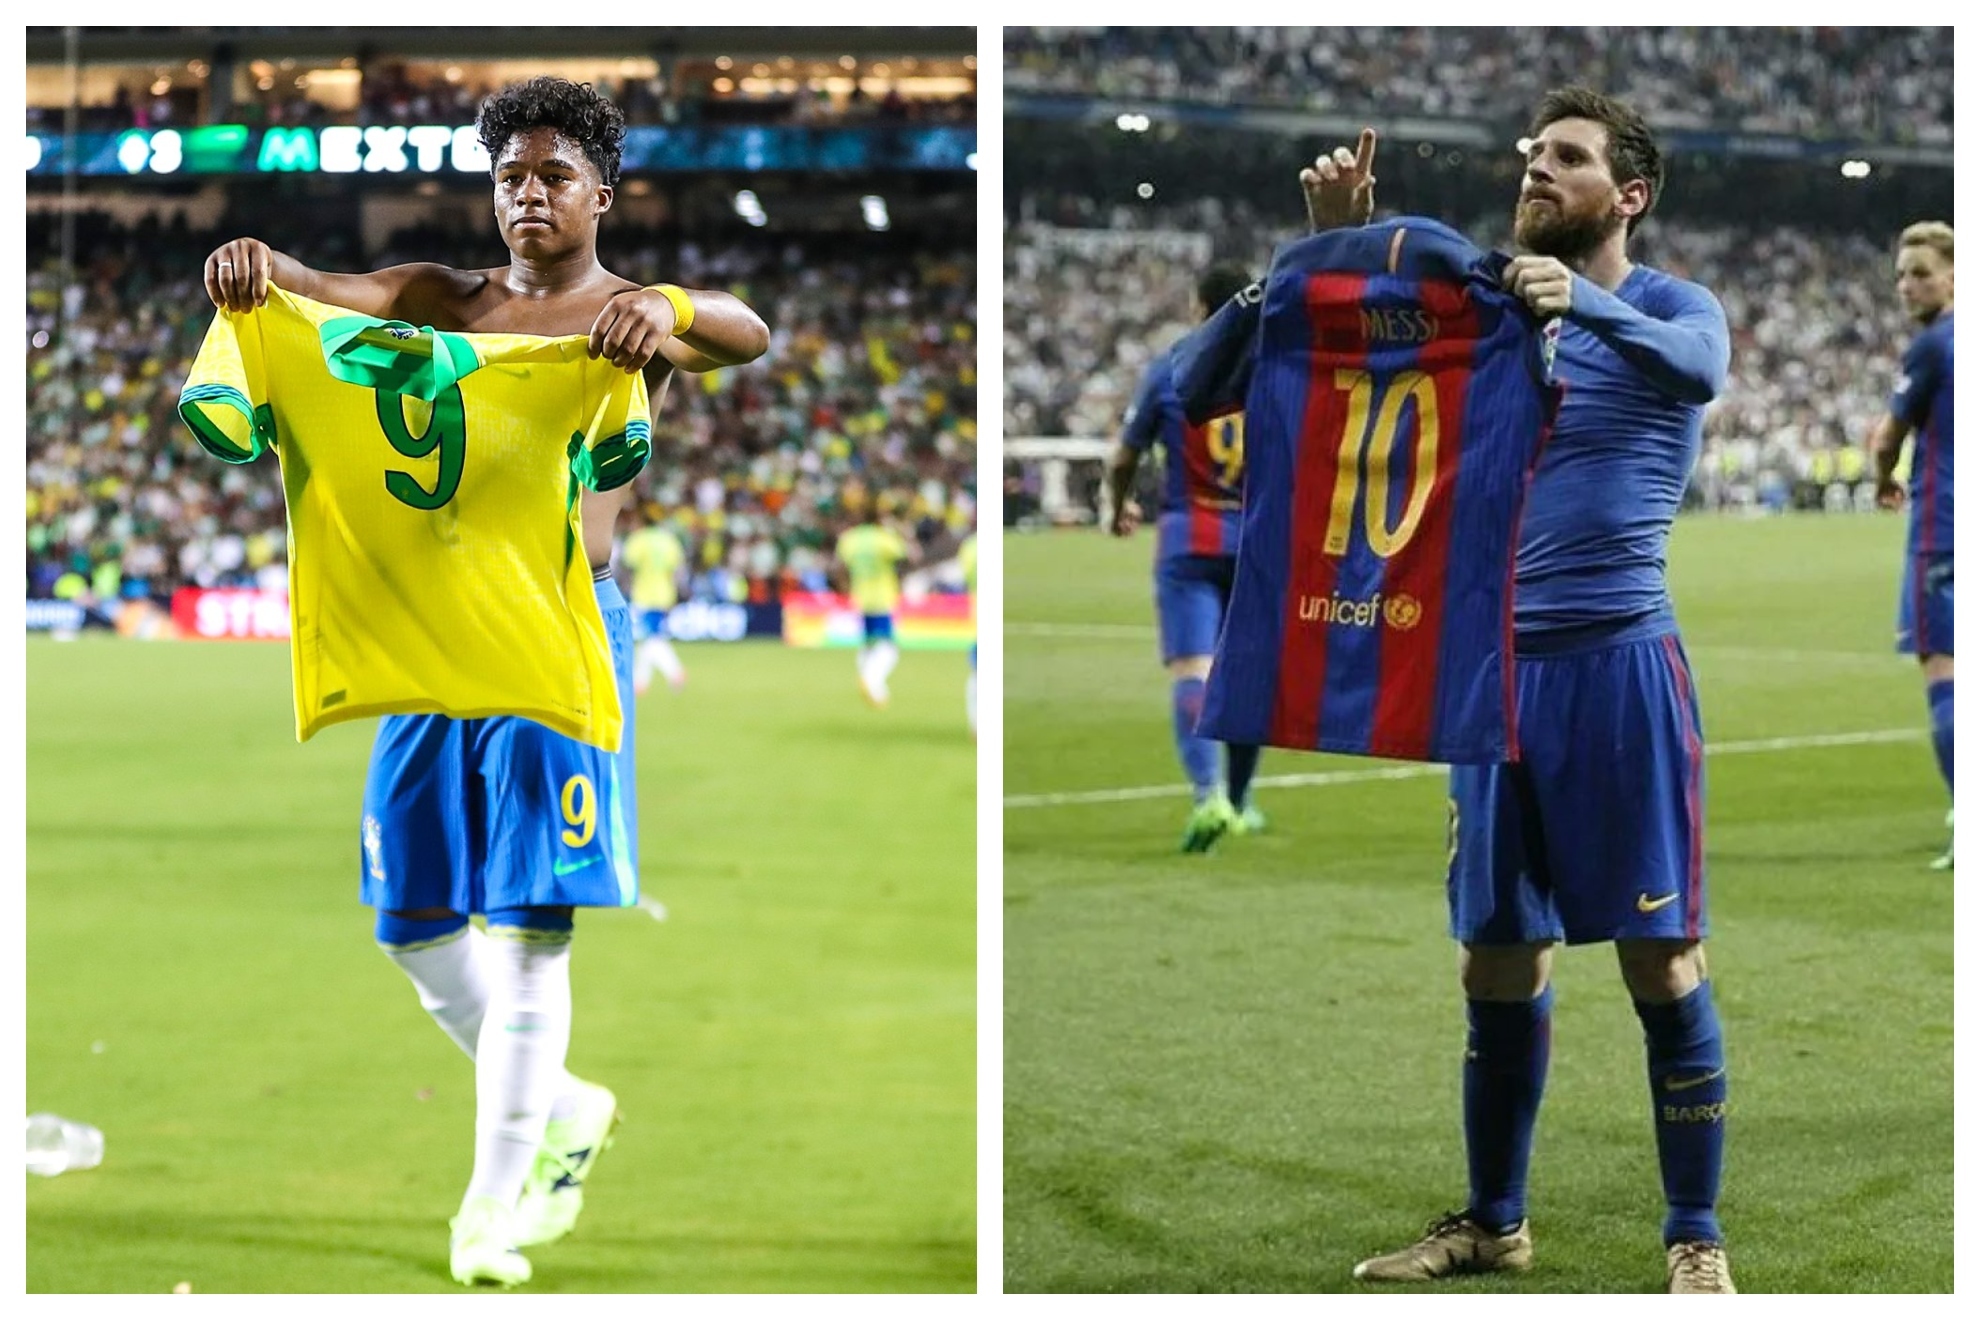 El Madrid se relame: Vinicius asiste, Endrick marca el gol de la victoria y lo celebra a lo Messi en el Bernab�u